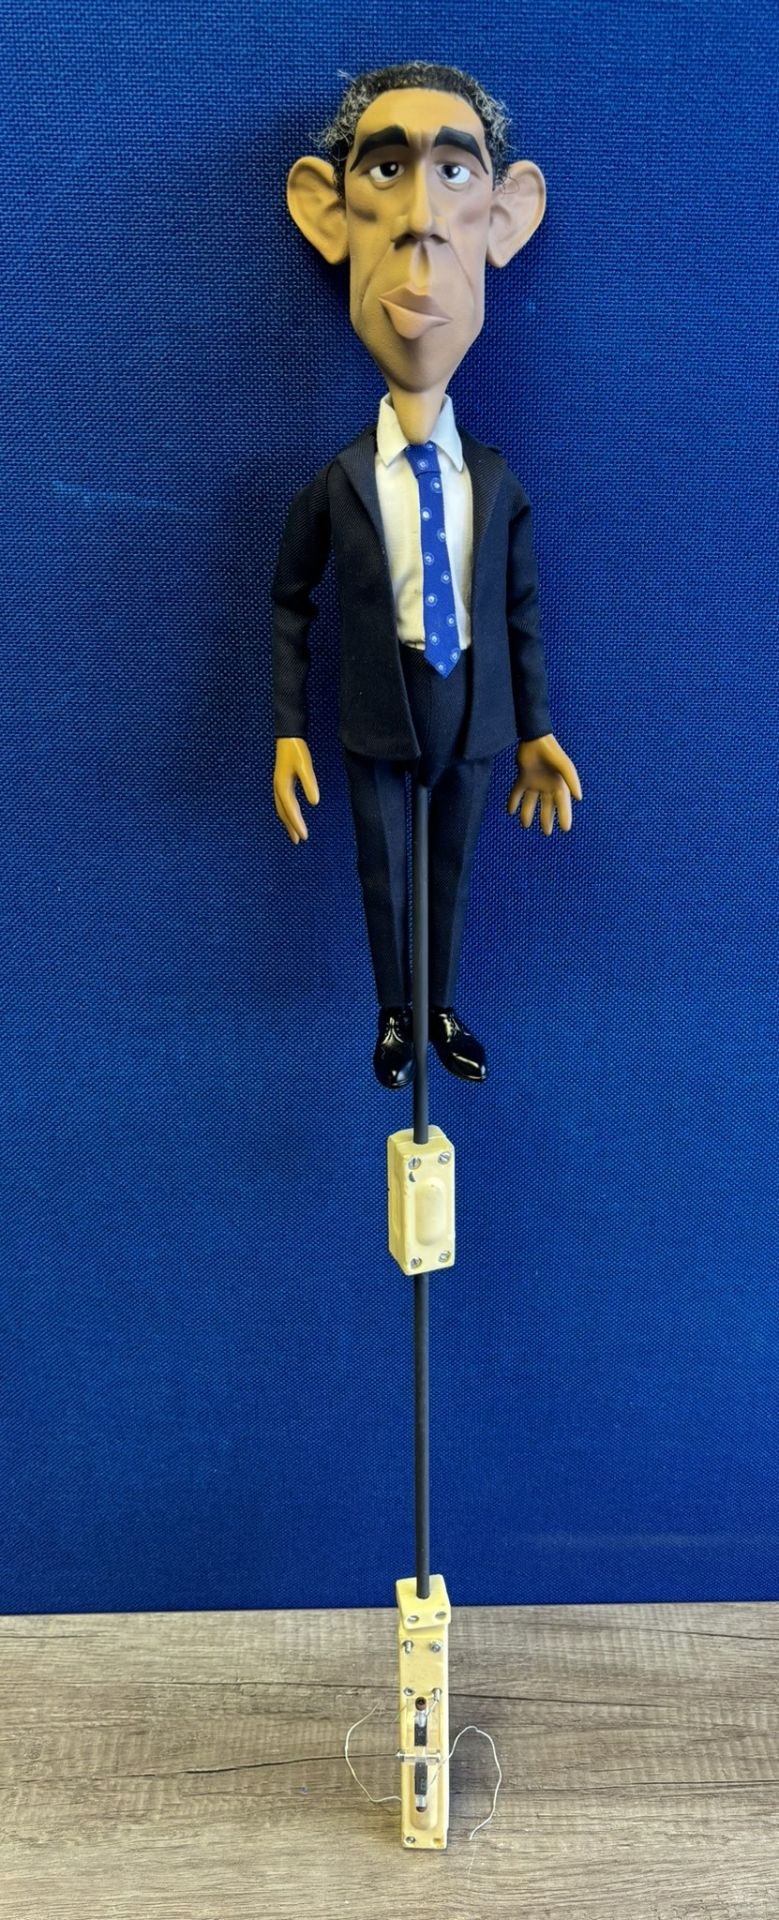 Newzoid puppet - Barack Obama - Image 3 of 3